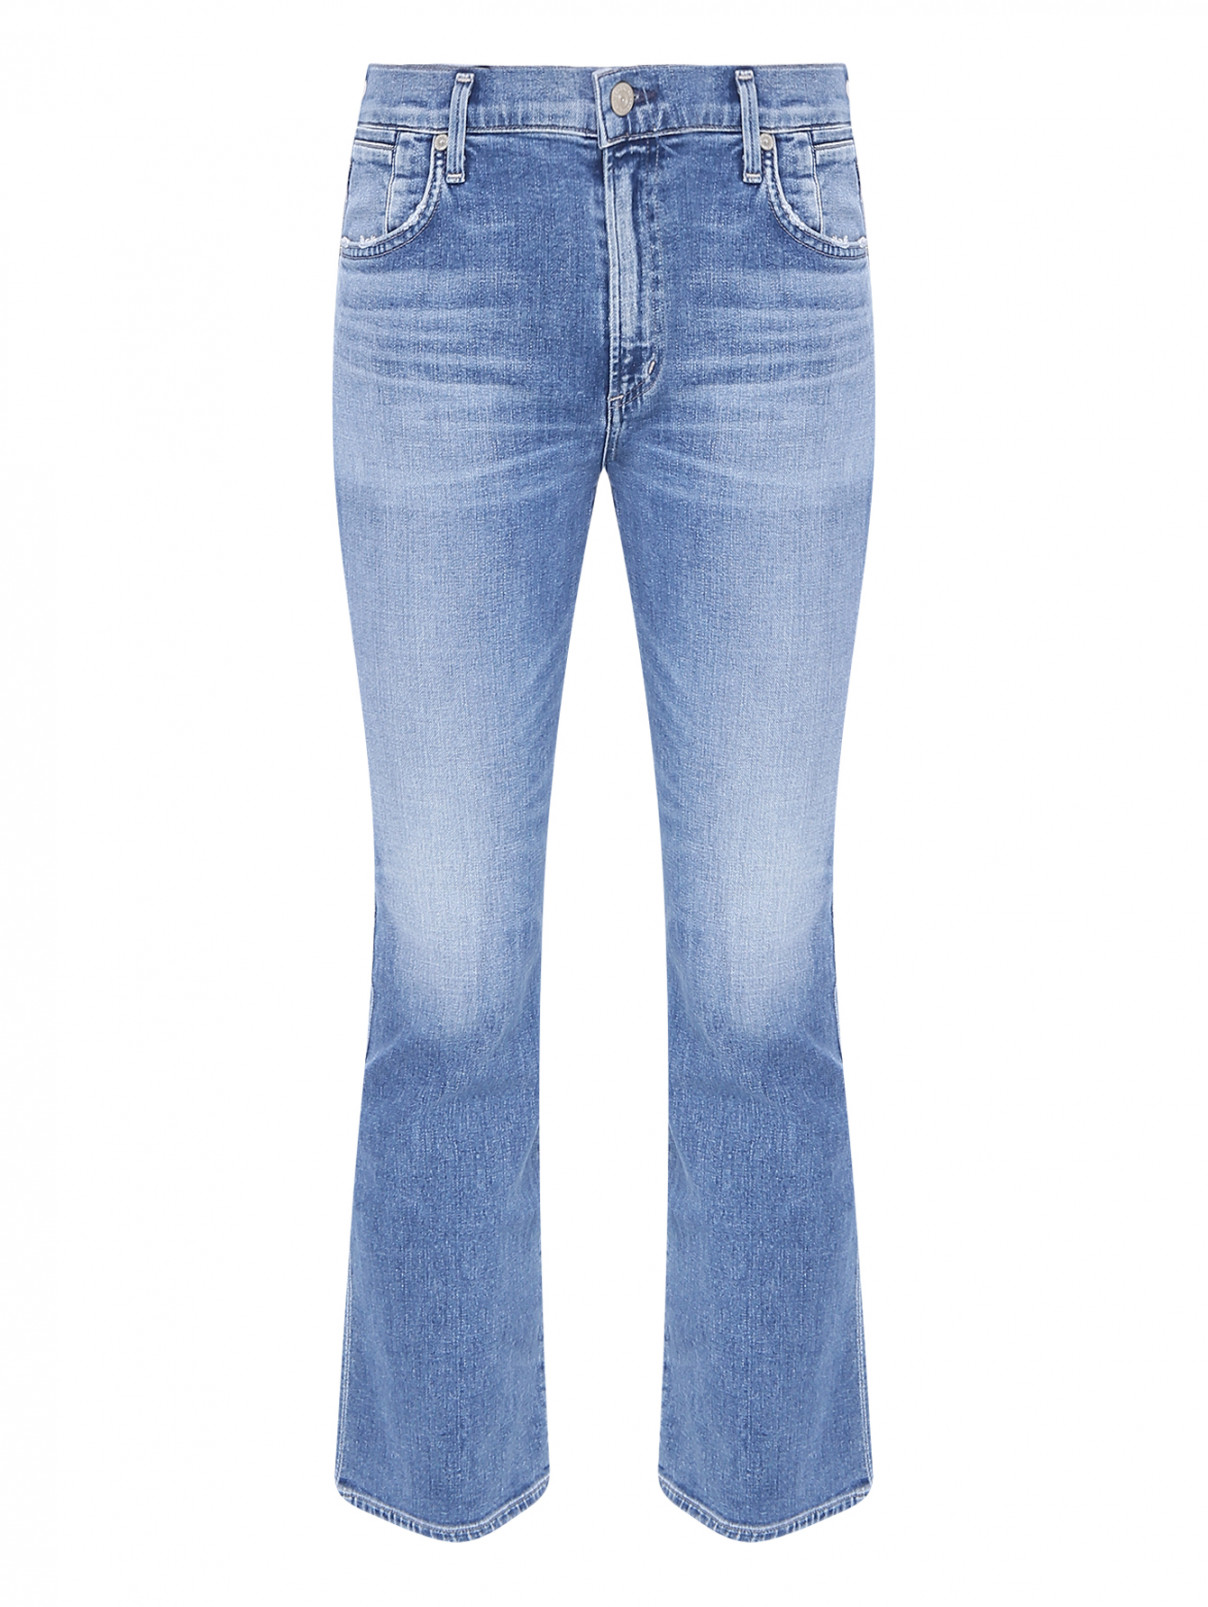 Прямые джинсы из хлопка с карманами Citizens of Humanity  –  Общий вид  – Цвет:  Синий